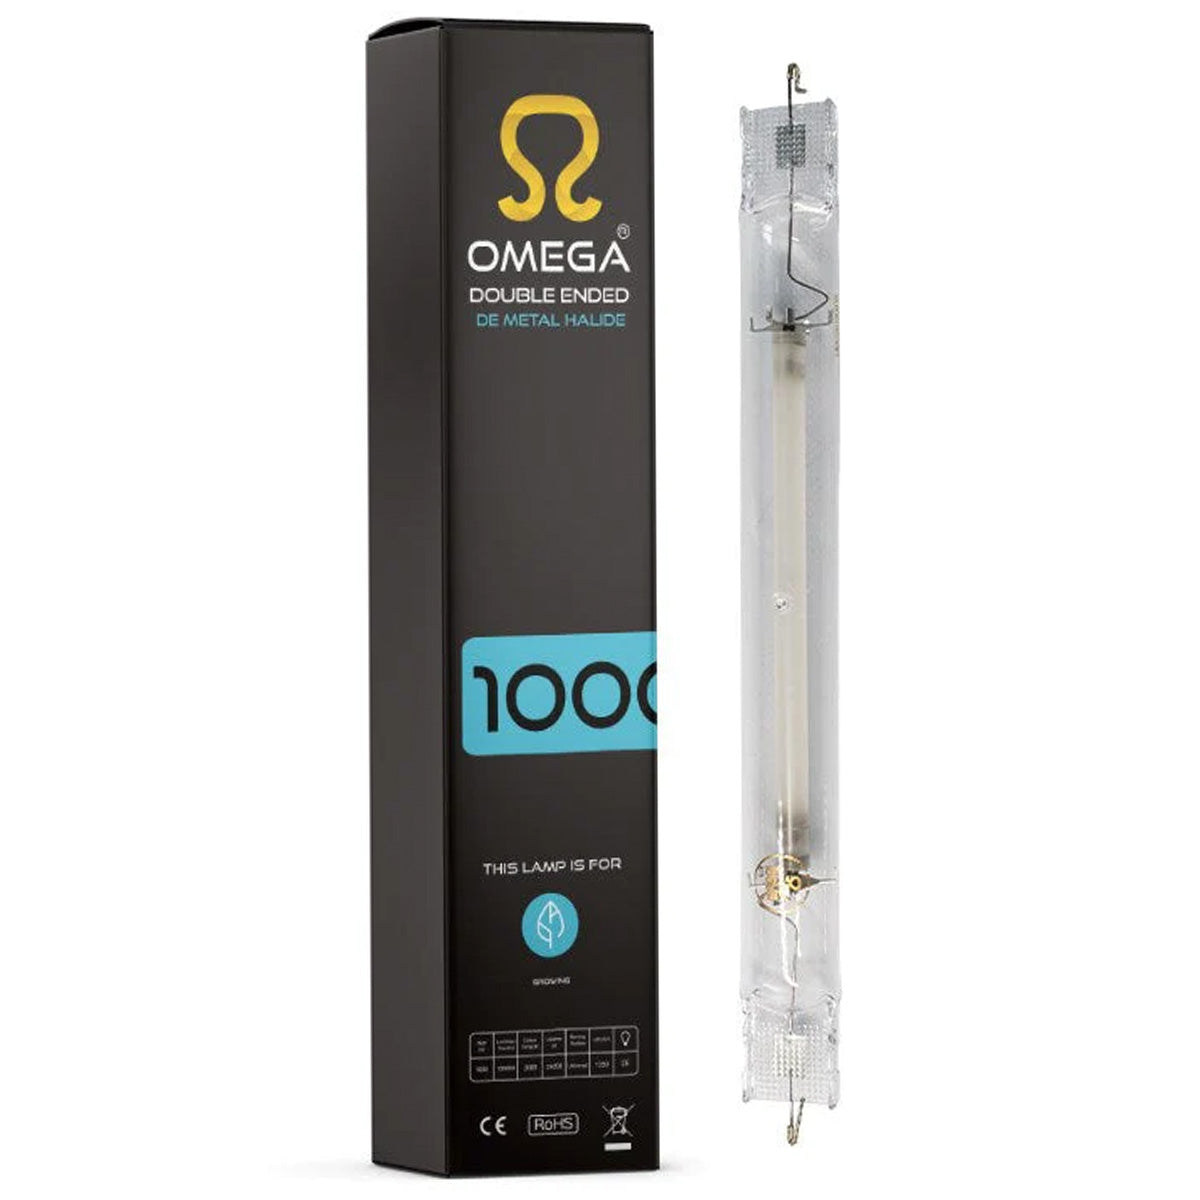 Omega 1000W DE 400V Metal Halide Lamp